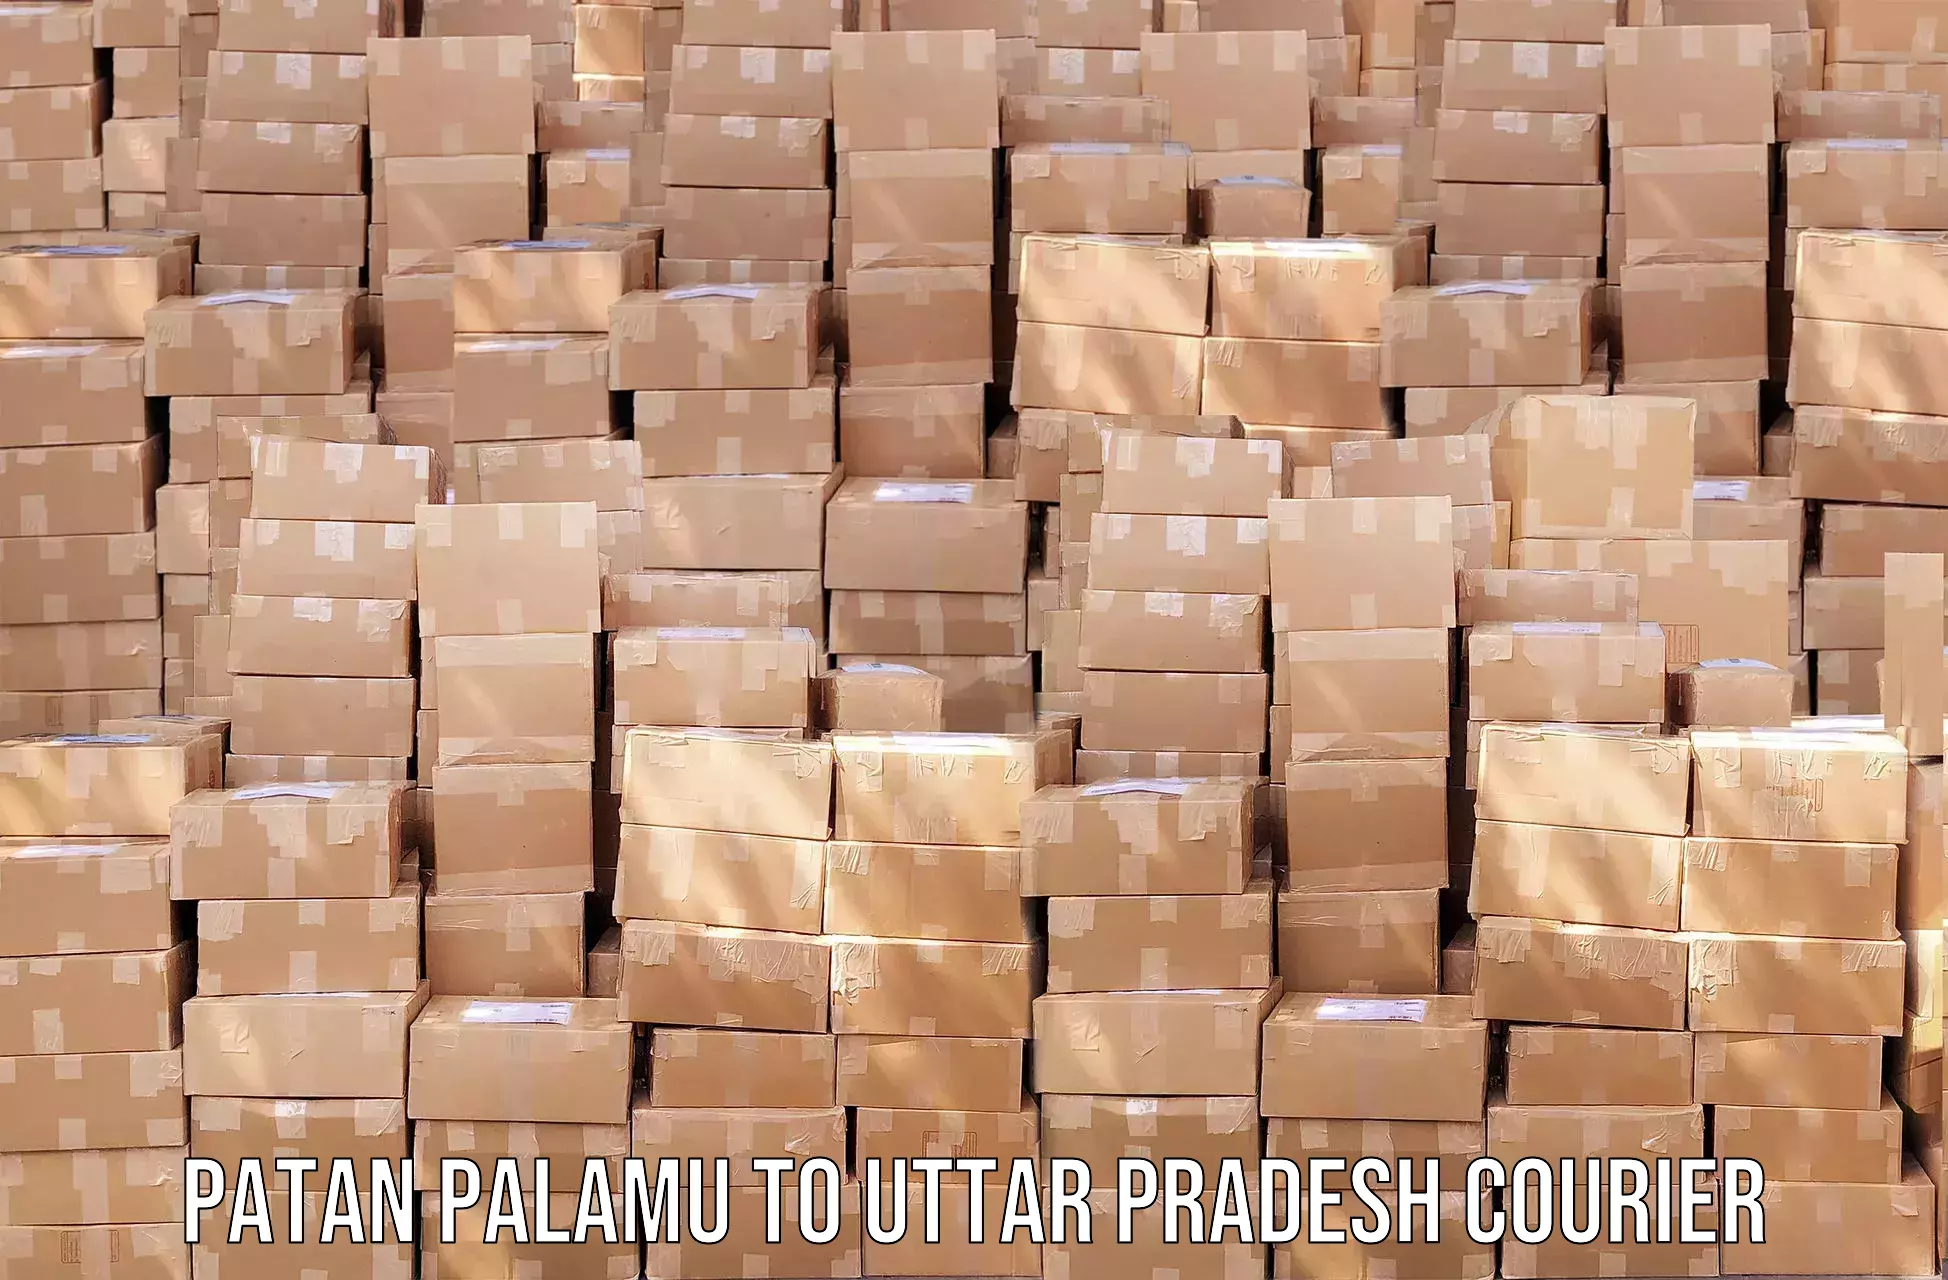 Efficient shipping operations Patan Palamu to Chandwak